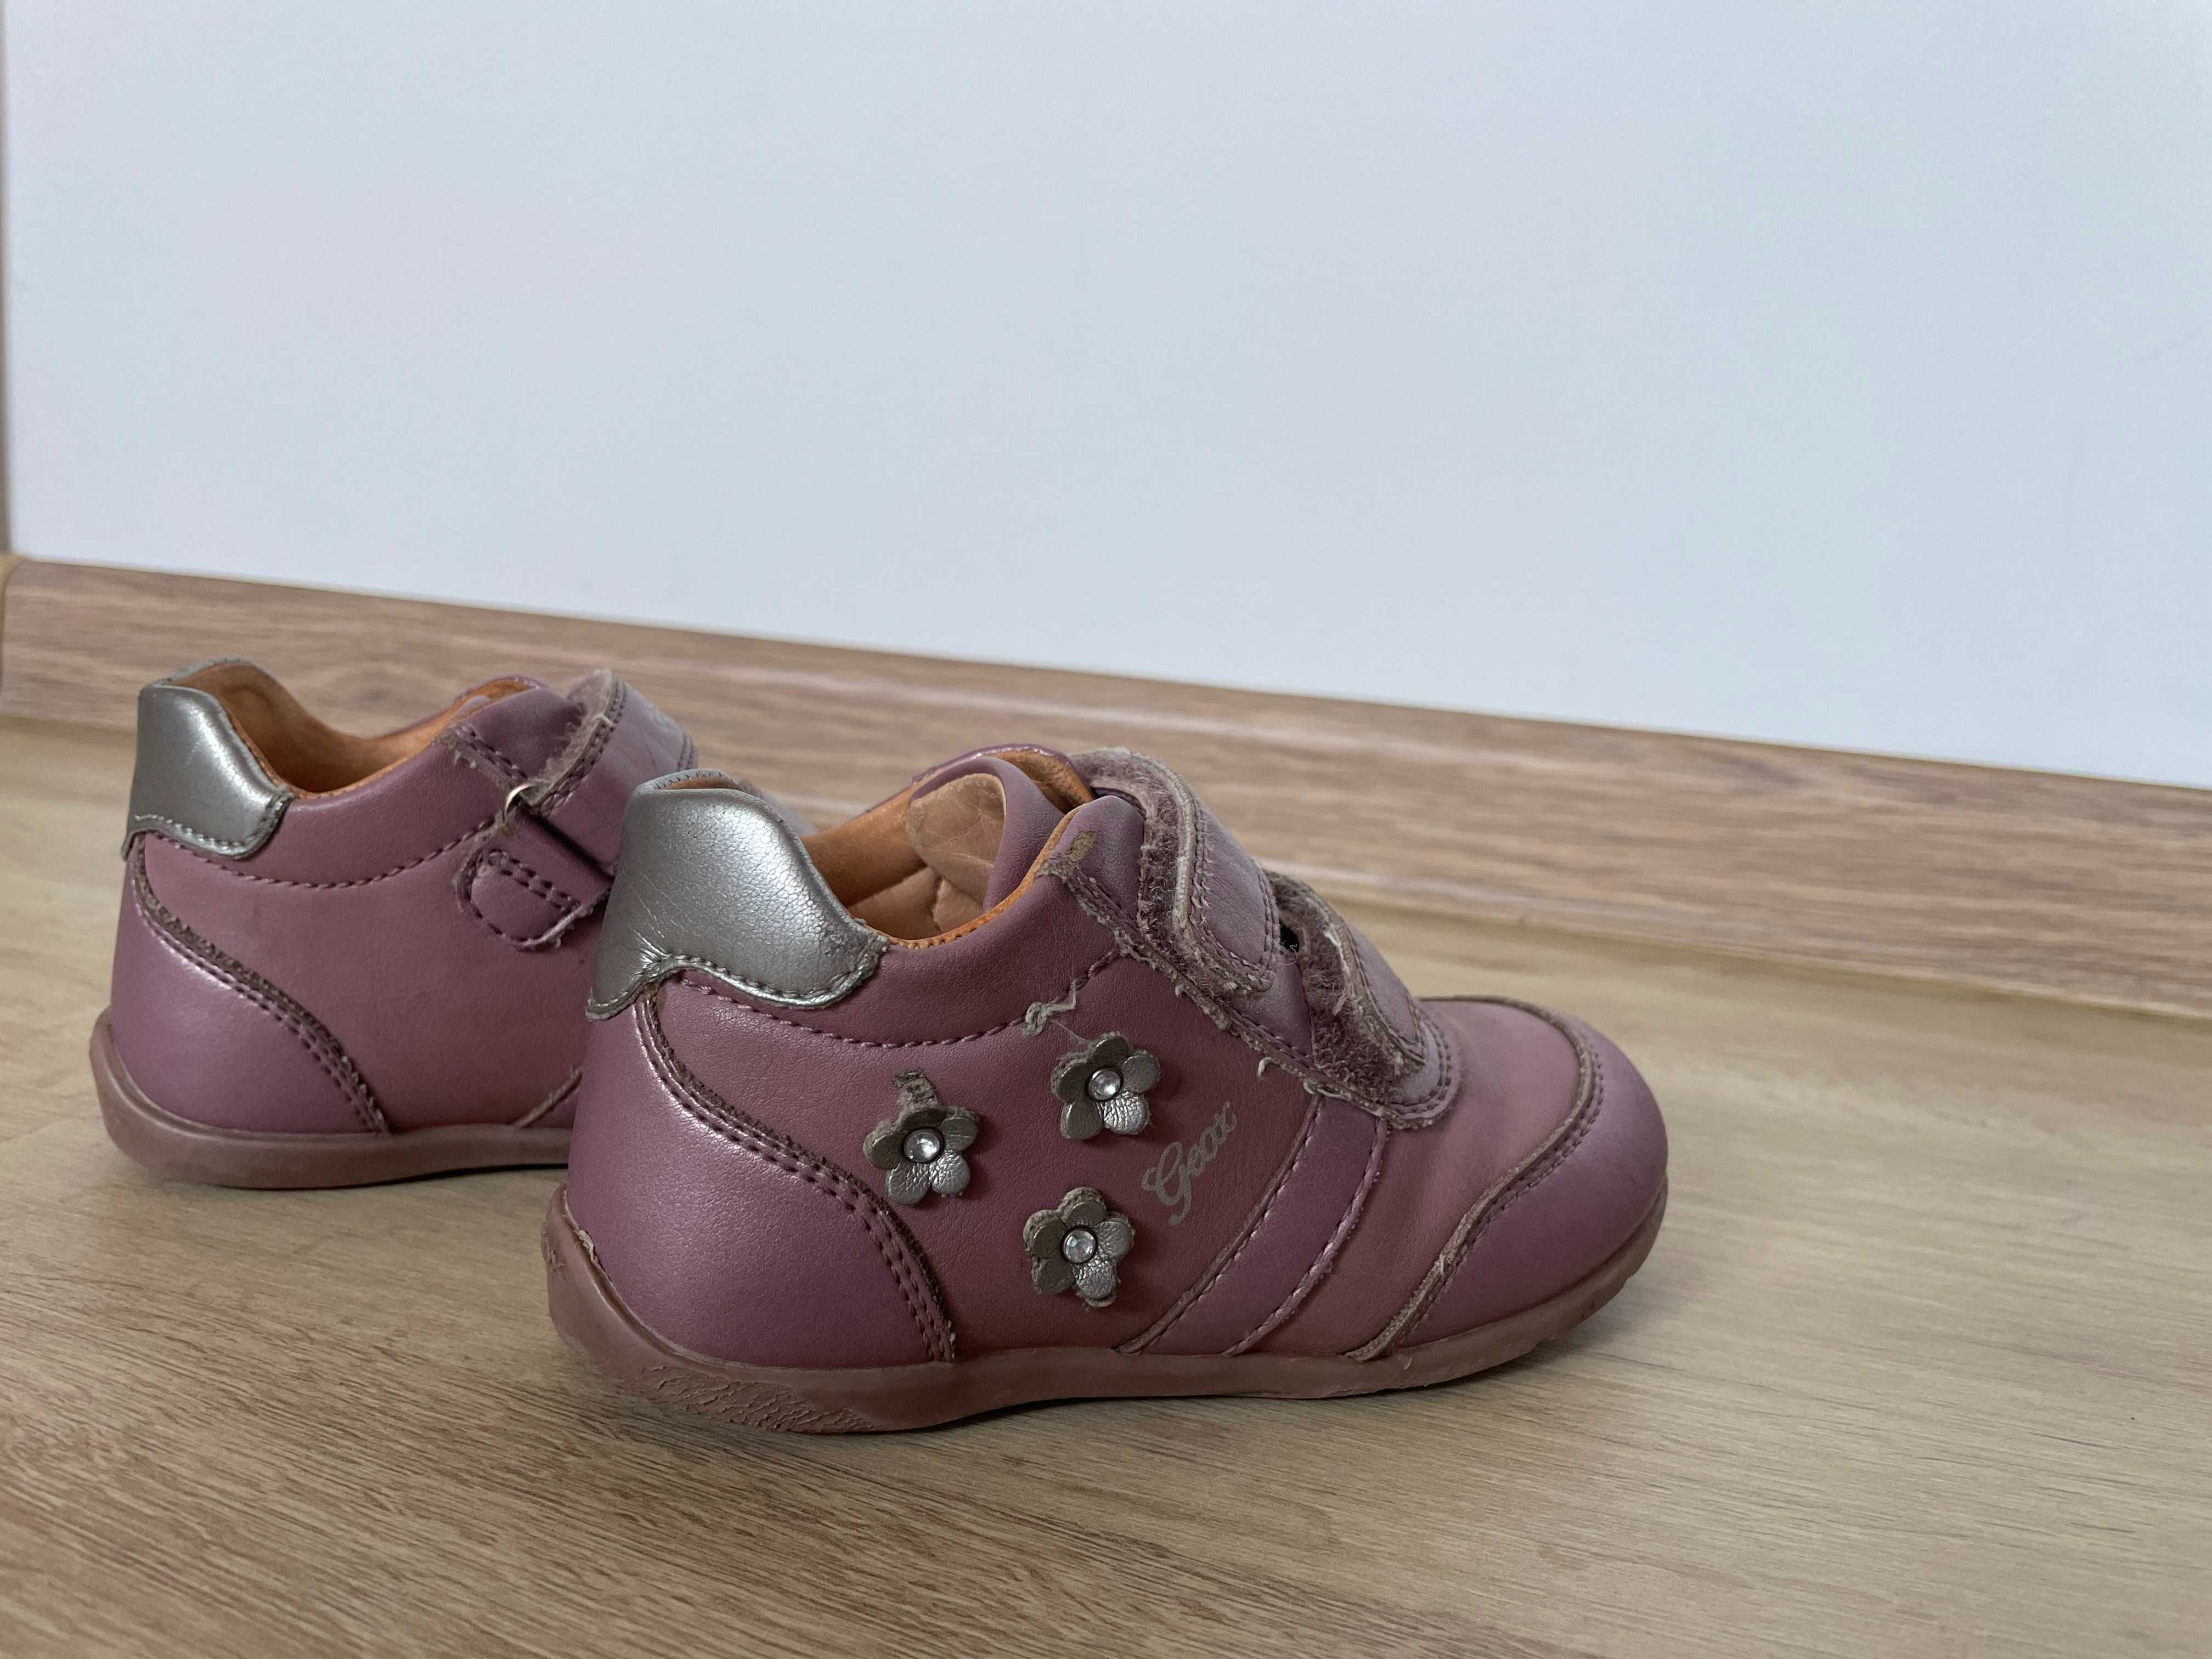 Buty różowe Geox r. 24 skórzana wkładka